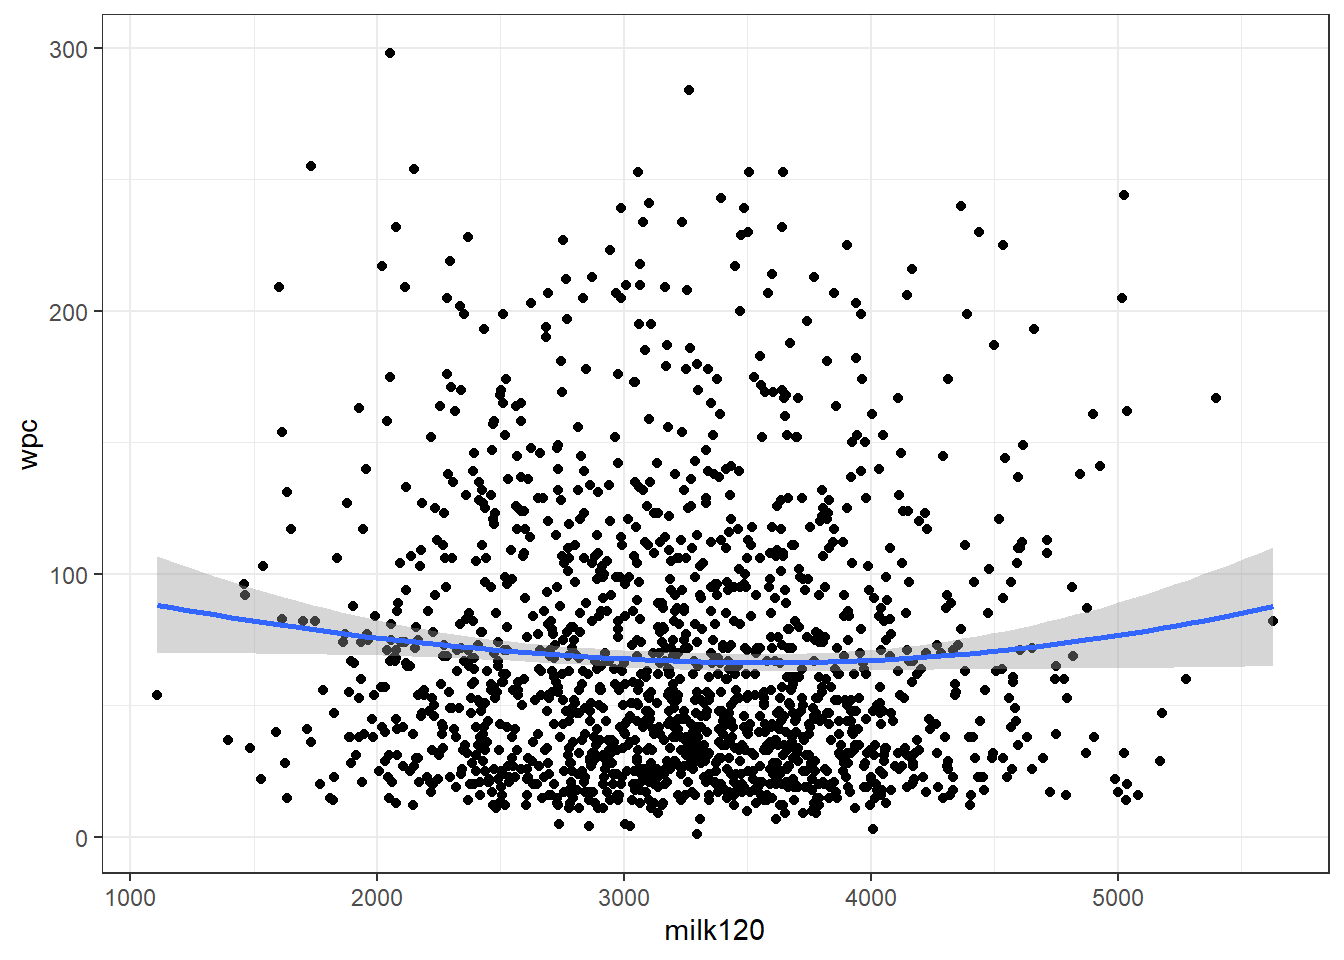 Relation entre la production de lait en 120j (milk120) et le nombre de jours jusqu’à la saillie fécondante (wpc) avec courbe lissée avec un facteur de 2.